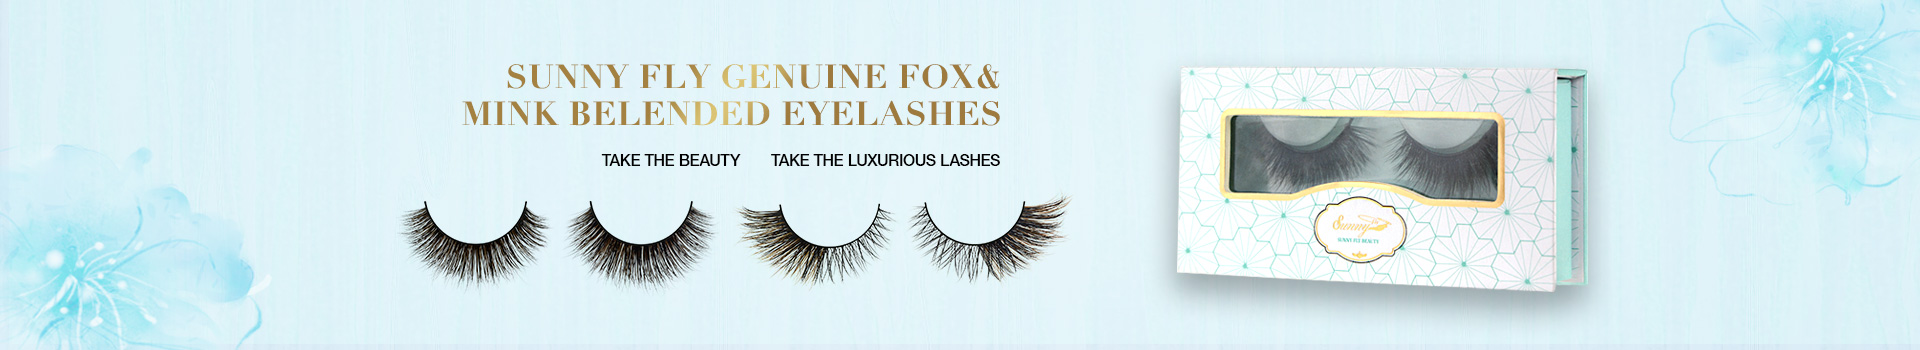 Fox & Mink Fur Blended Eyelashes FMB18